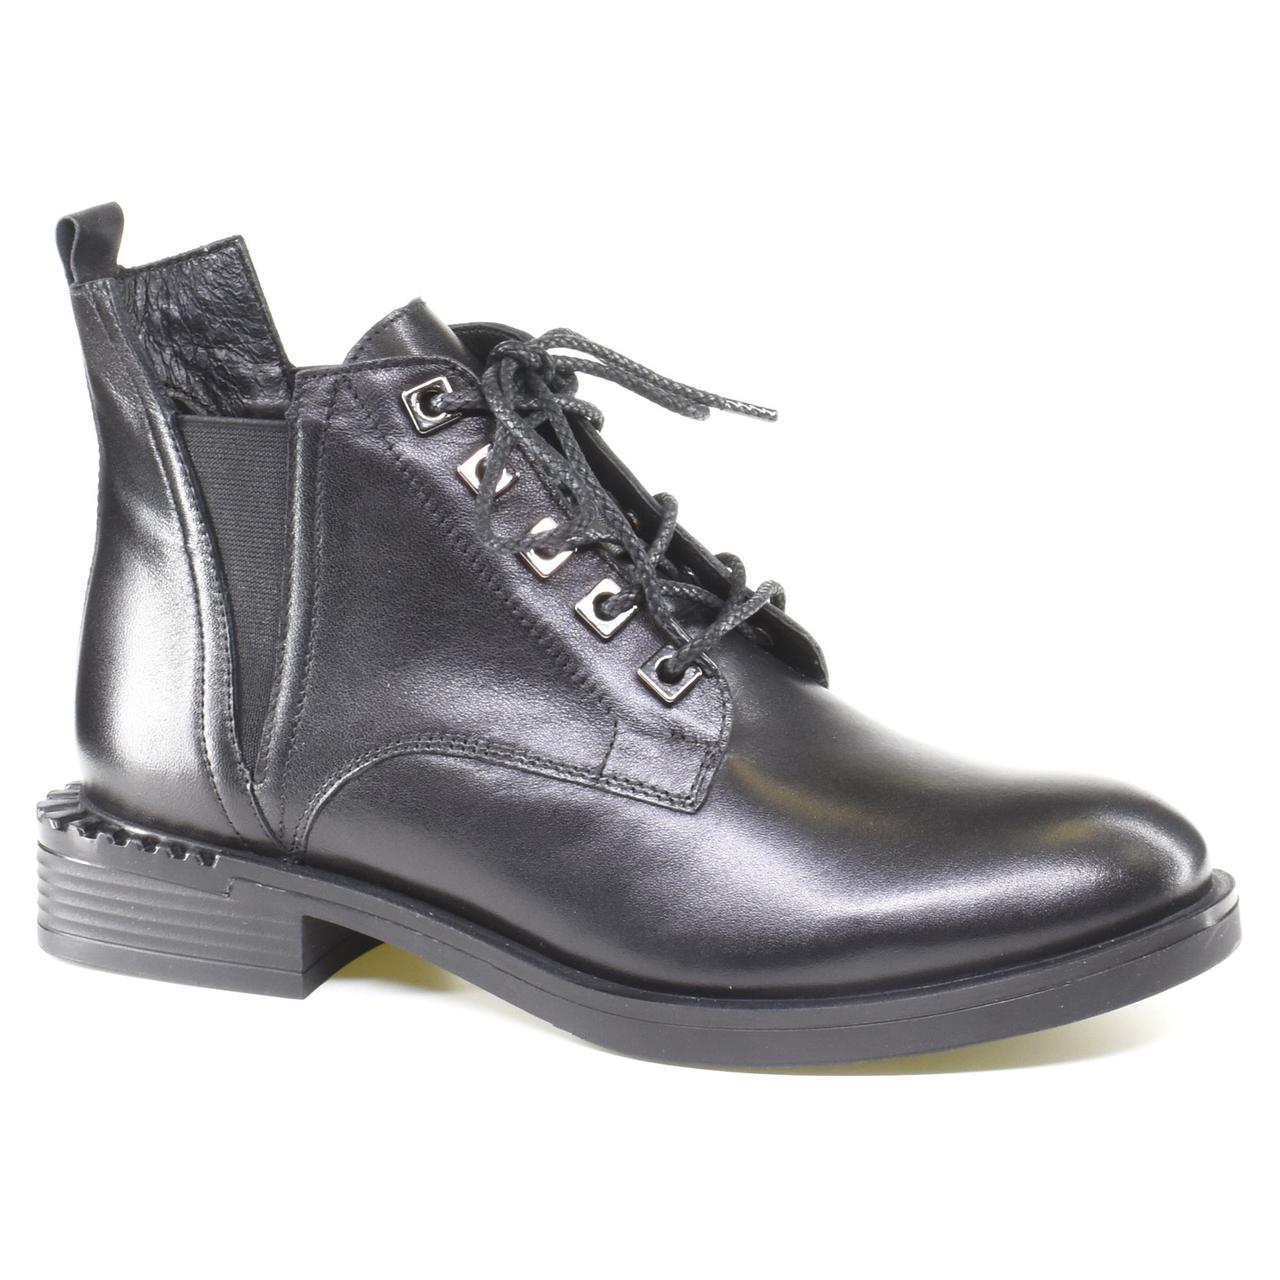 Женские повседневные ботинки Corso Vito код: 056125, размеры: 36, 37